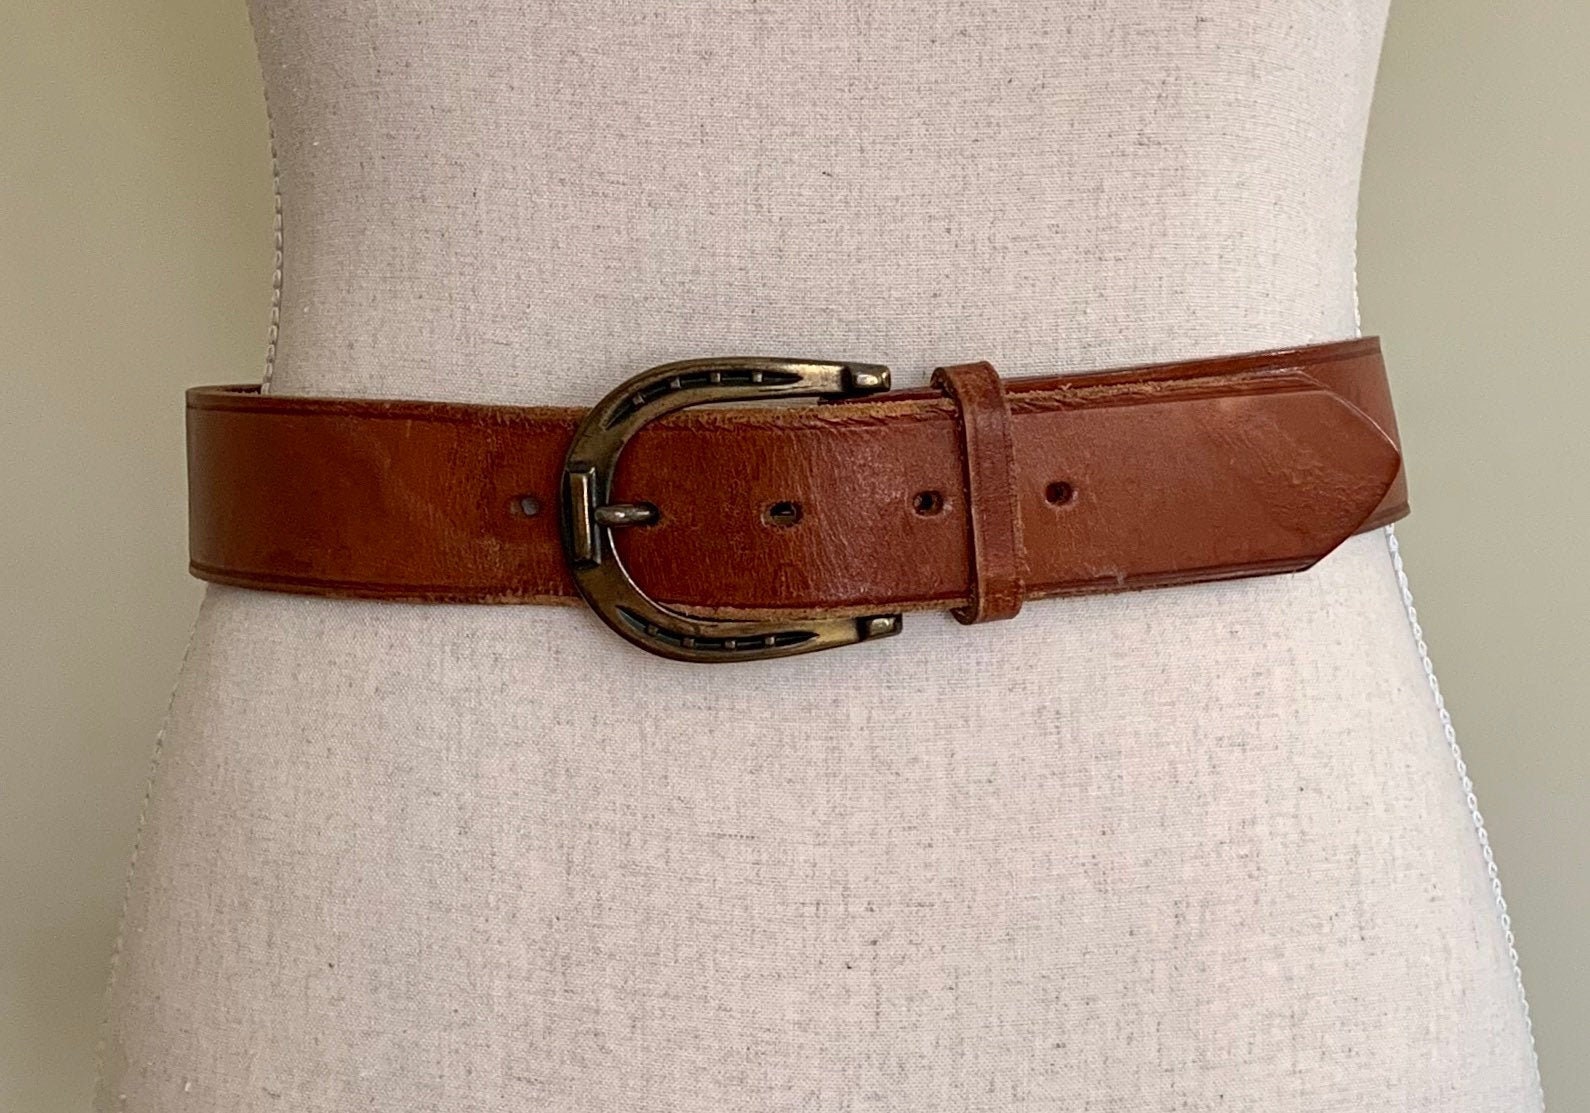 Brass Horseshoe Leather Belt Vintage Imported English Saddle Leather ...